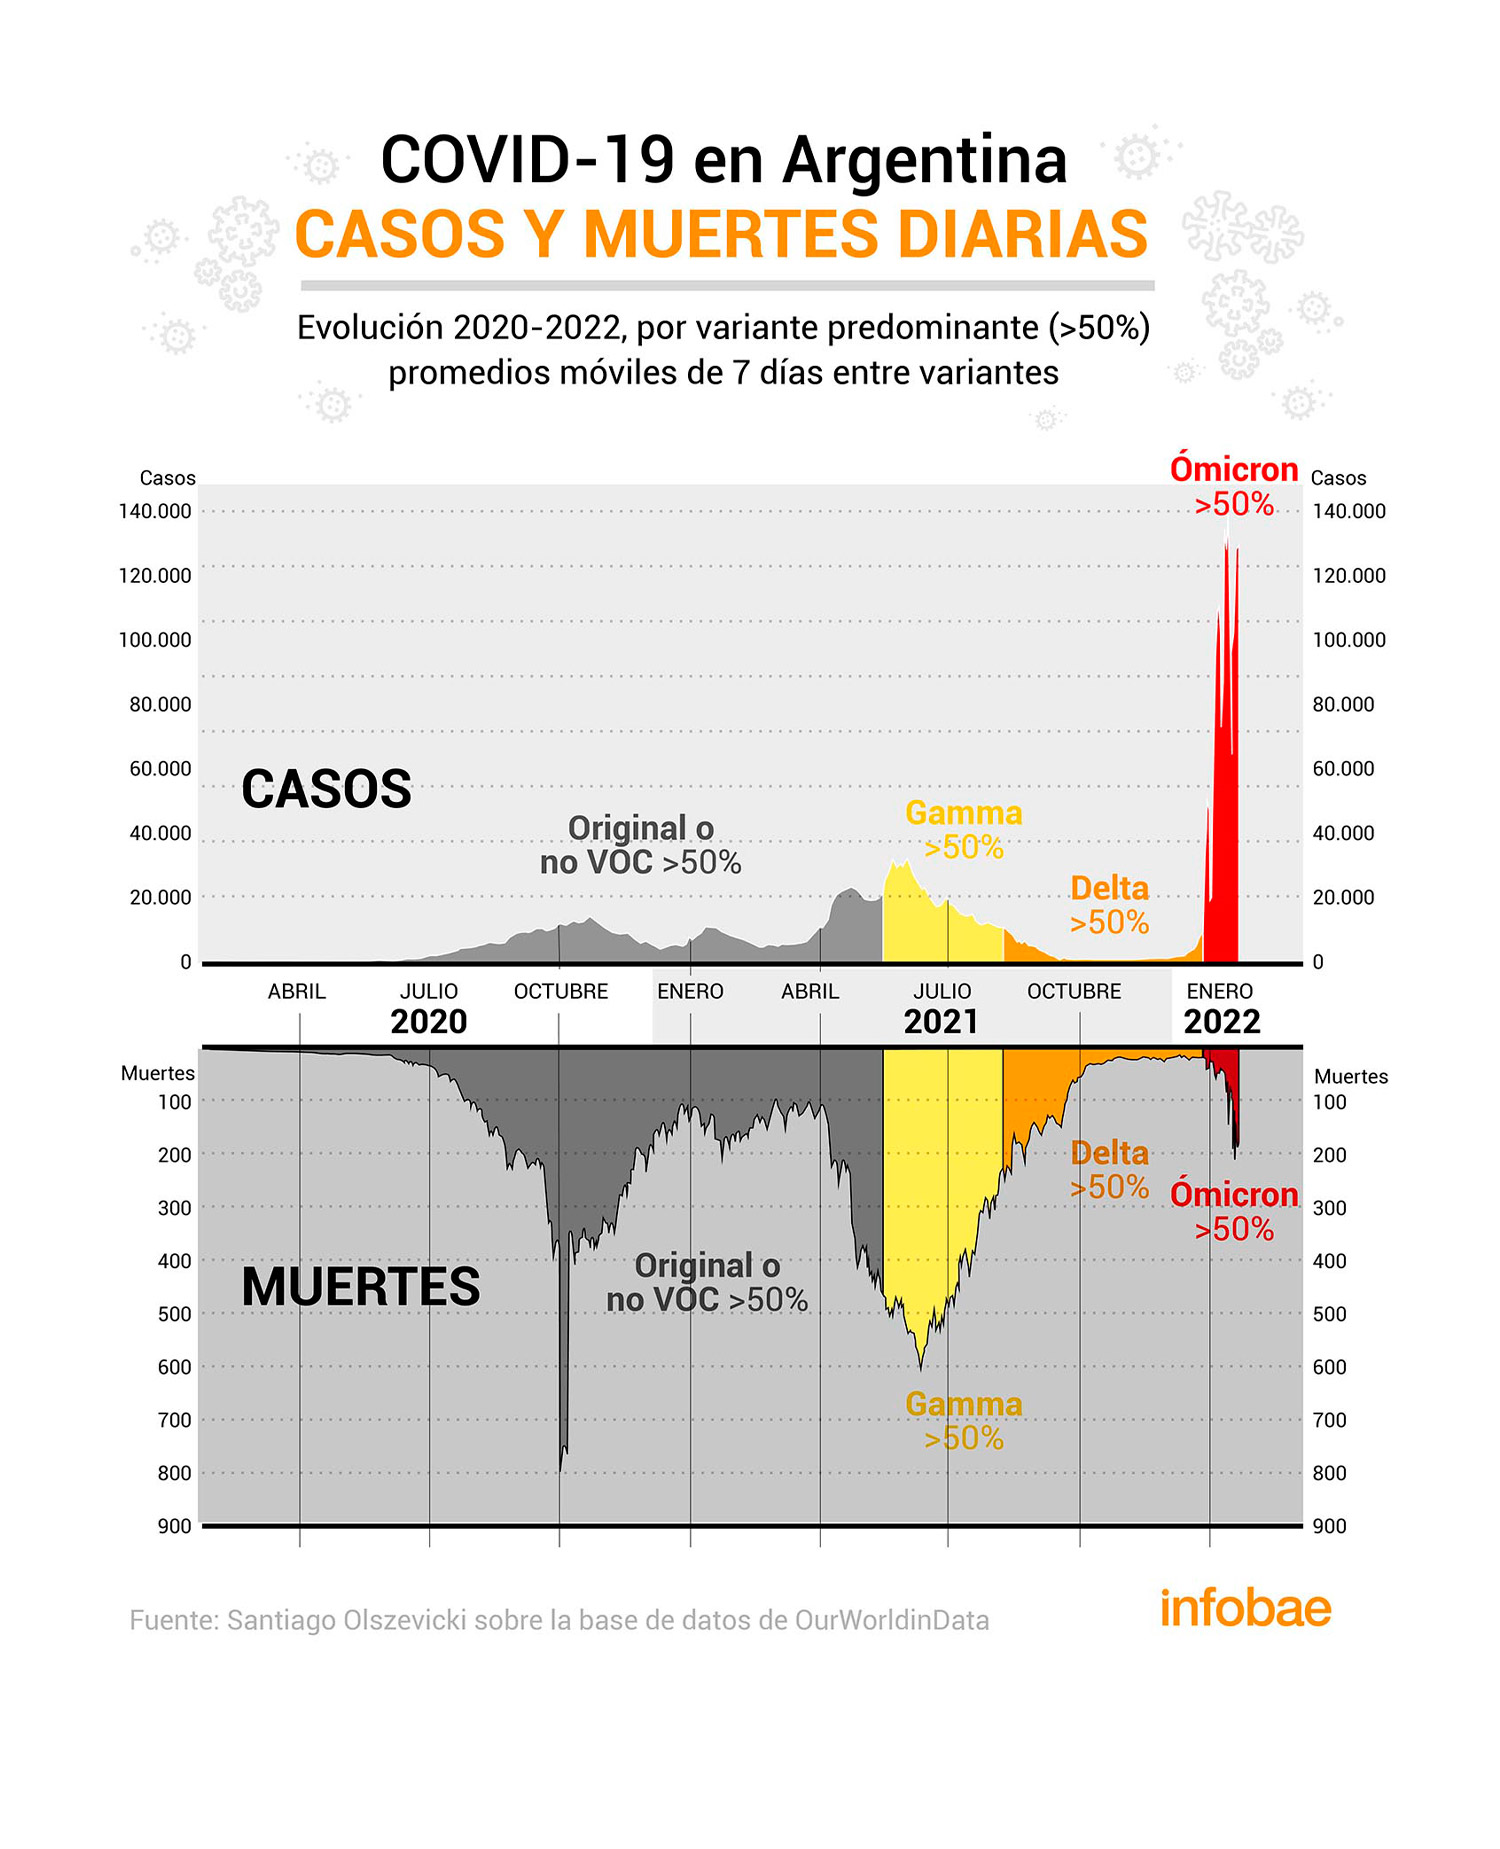 Cómo fueron variando los casos de COVID-19 y las muertes según la variante del coronavirus que predominara en Argentina desde el inicio de la pandemia